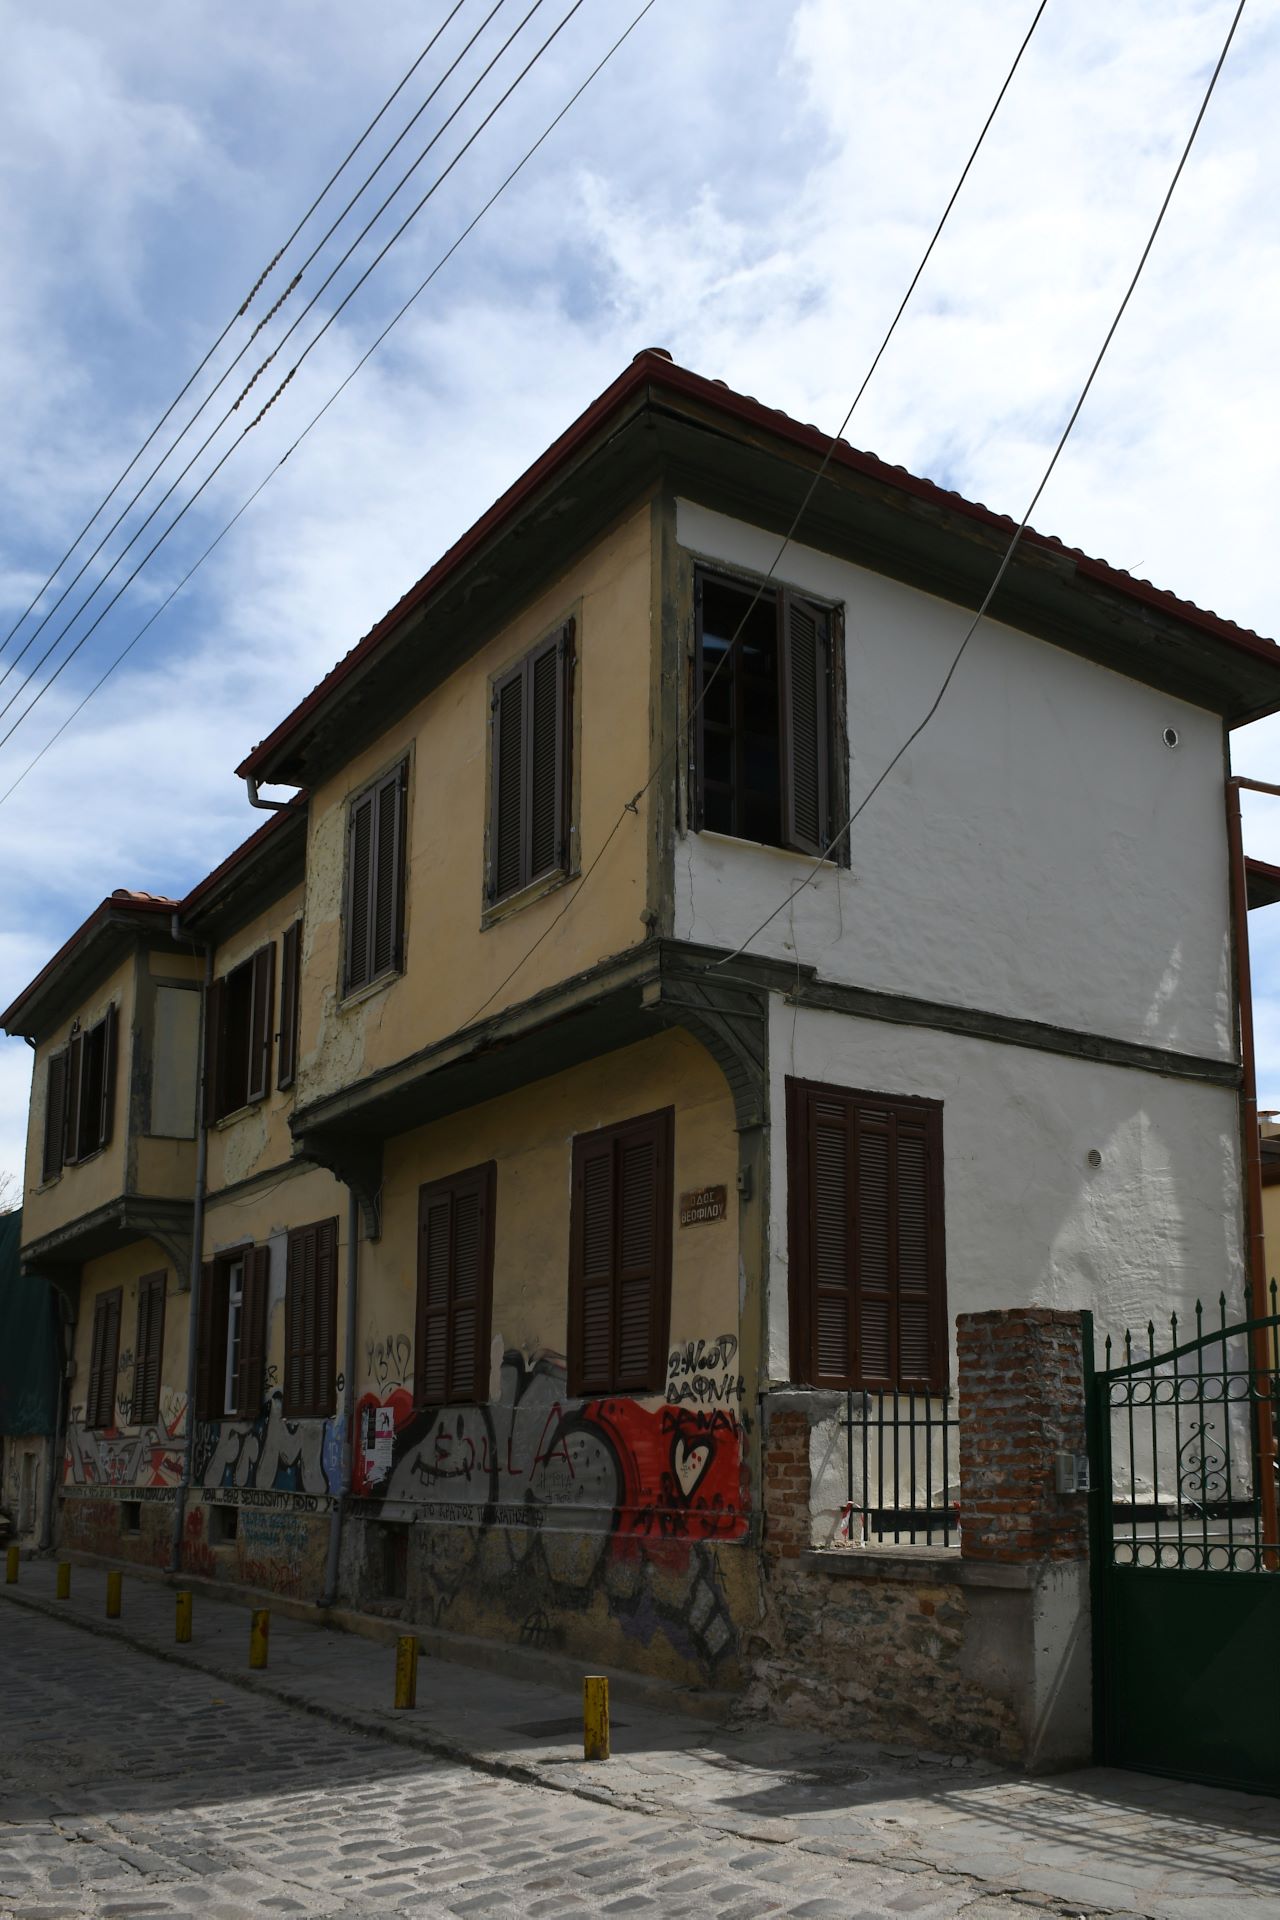 Häuser im Oberen Stadtbereich mit osmanischem Stileinfluss